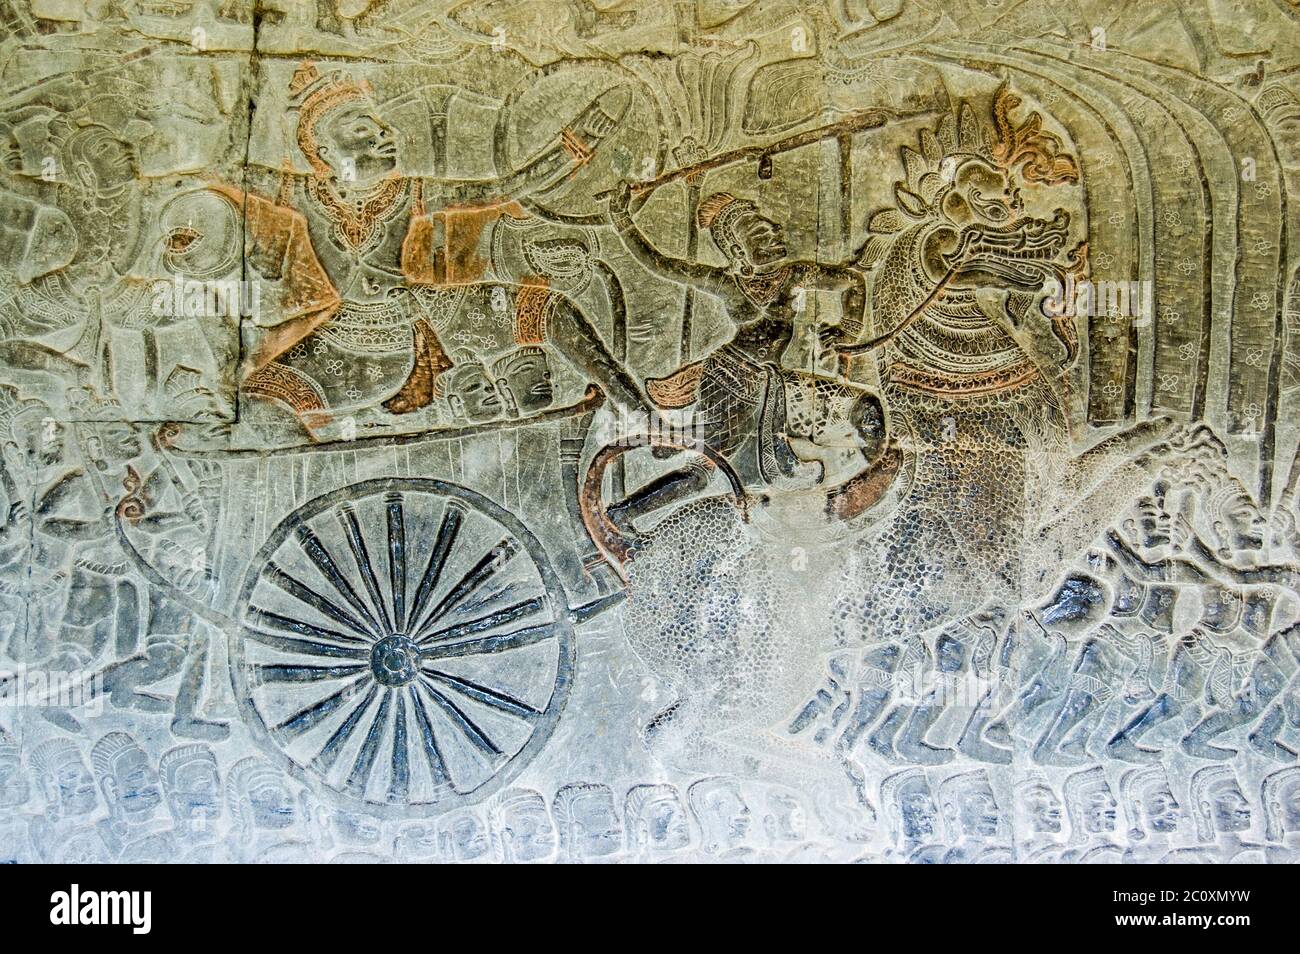 Il dio indù Vishnu su un carro tirato da un leone imperiale che va in battaglia con i demoni, o asura. Antico bassorilievo Khmer, tempio Angkor Wat, Foto Stock